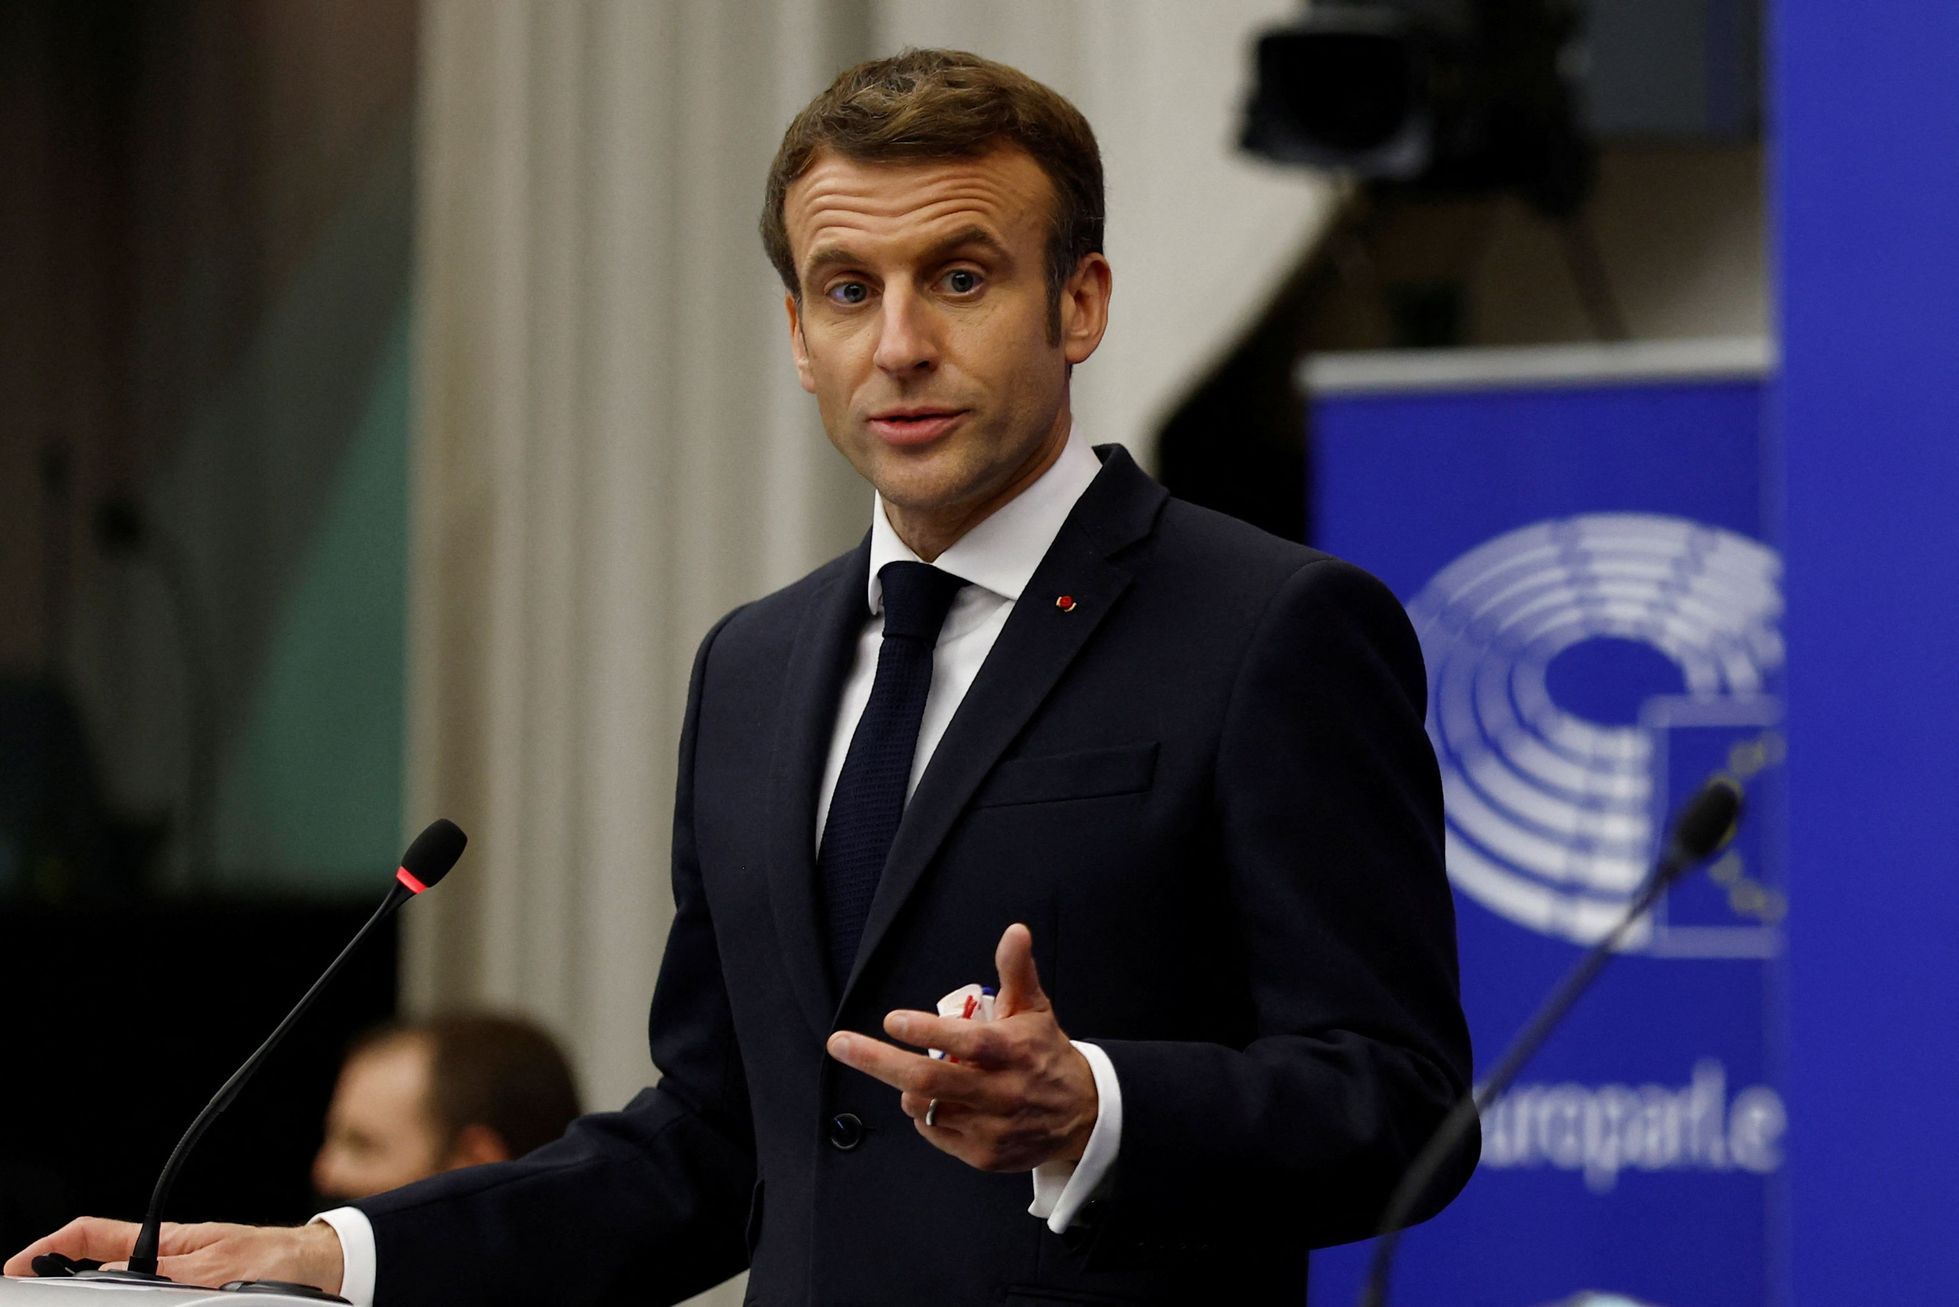 Douze candidats sont en lice pour l’élection présidentielle française, Macron ayant la meilleure chance